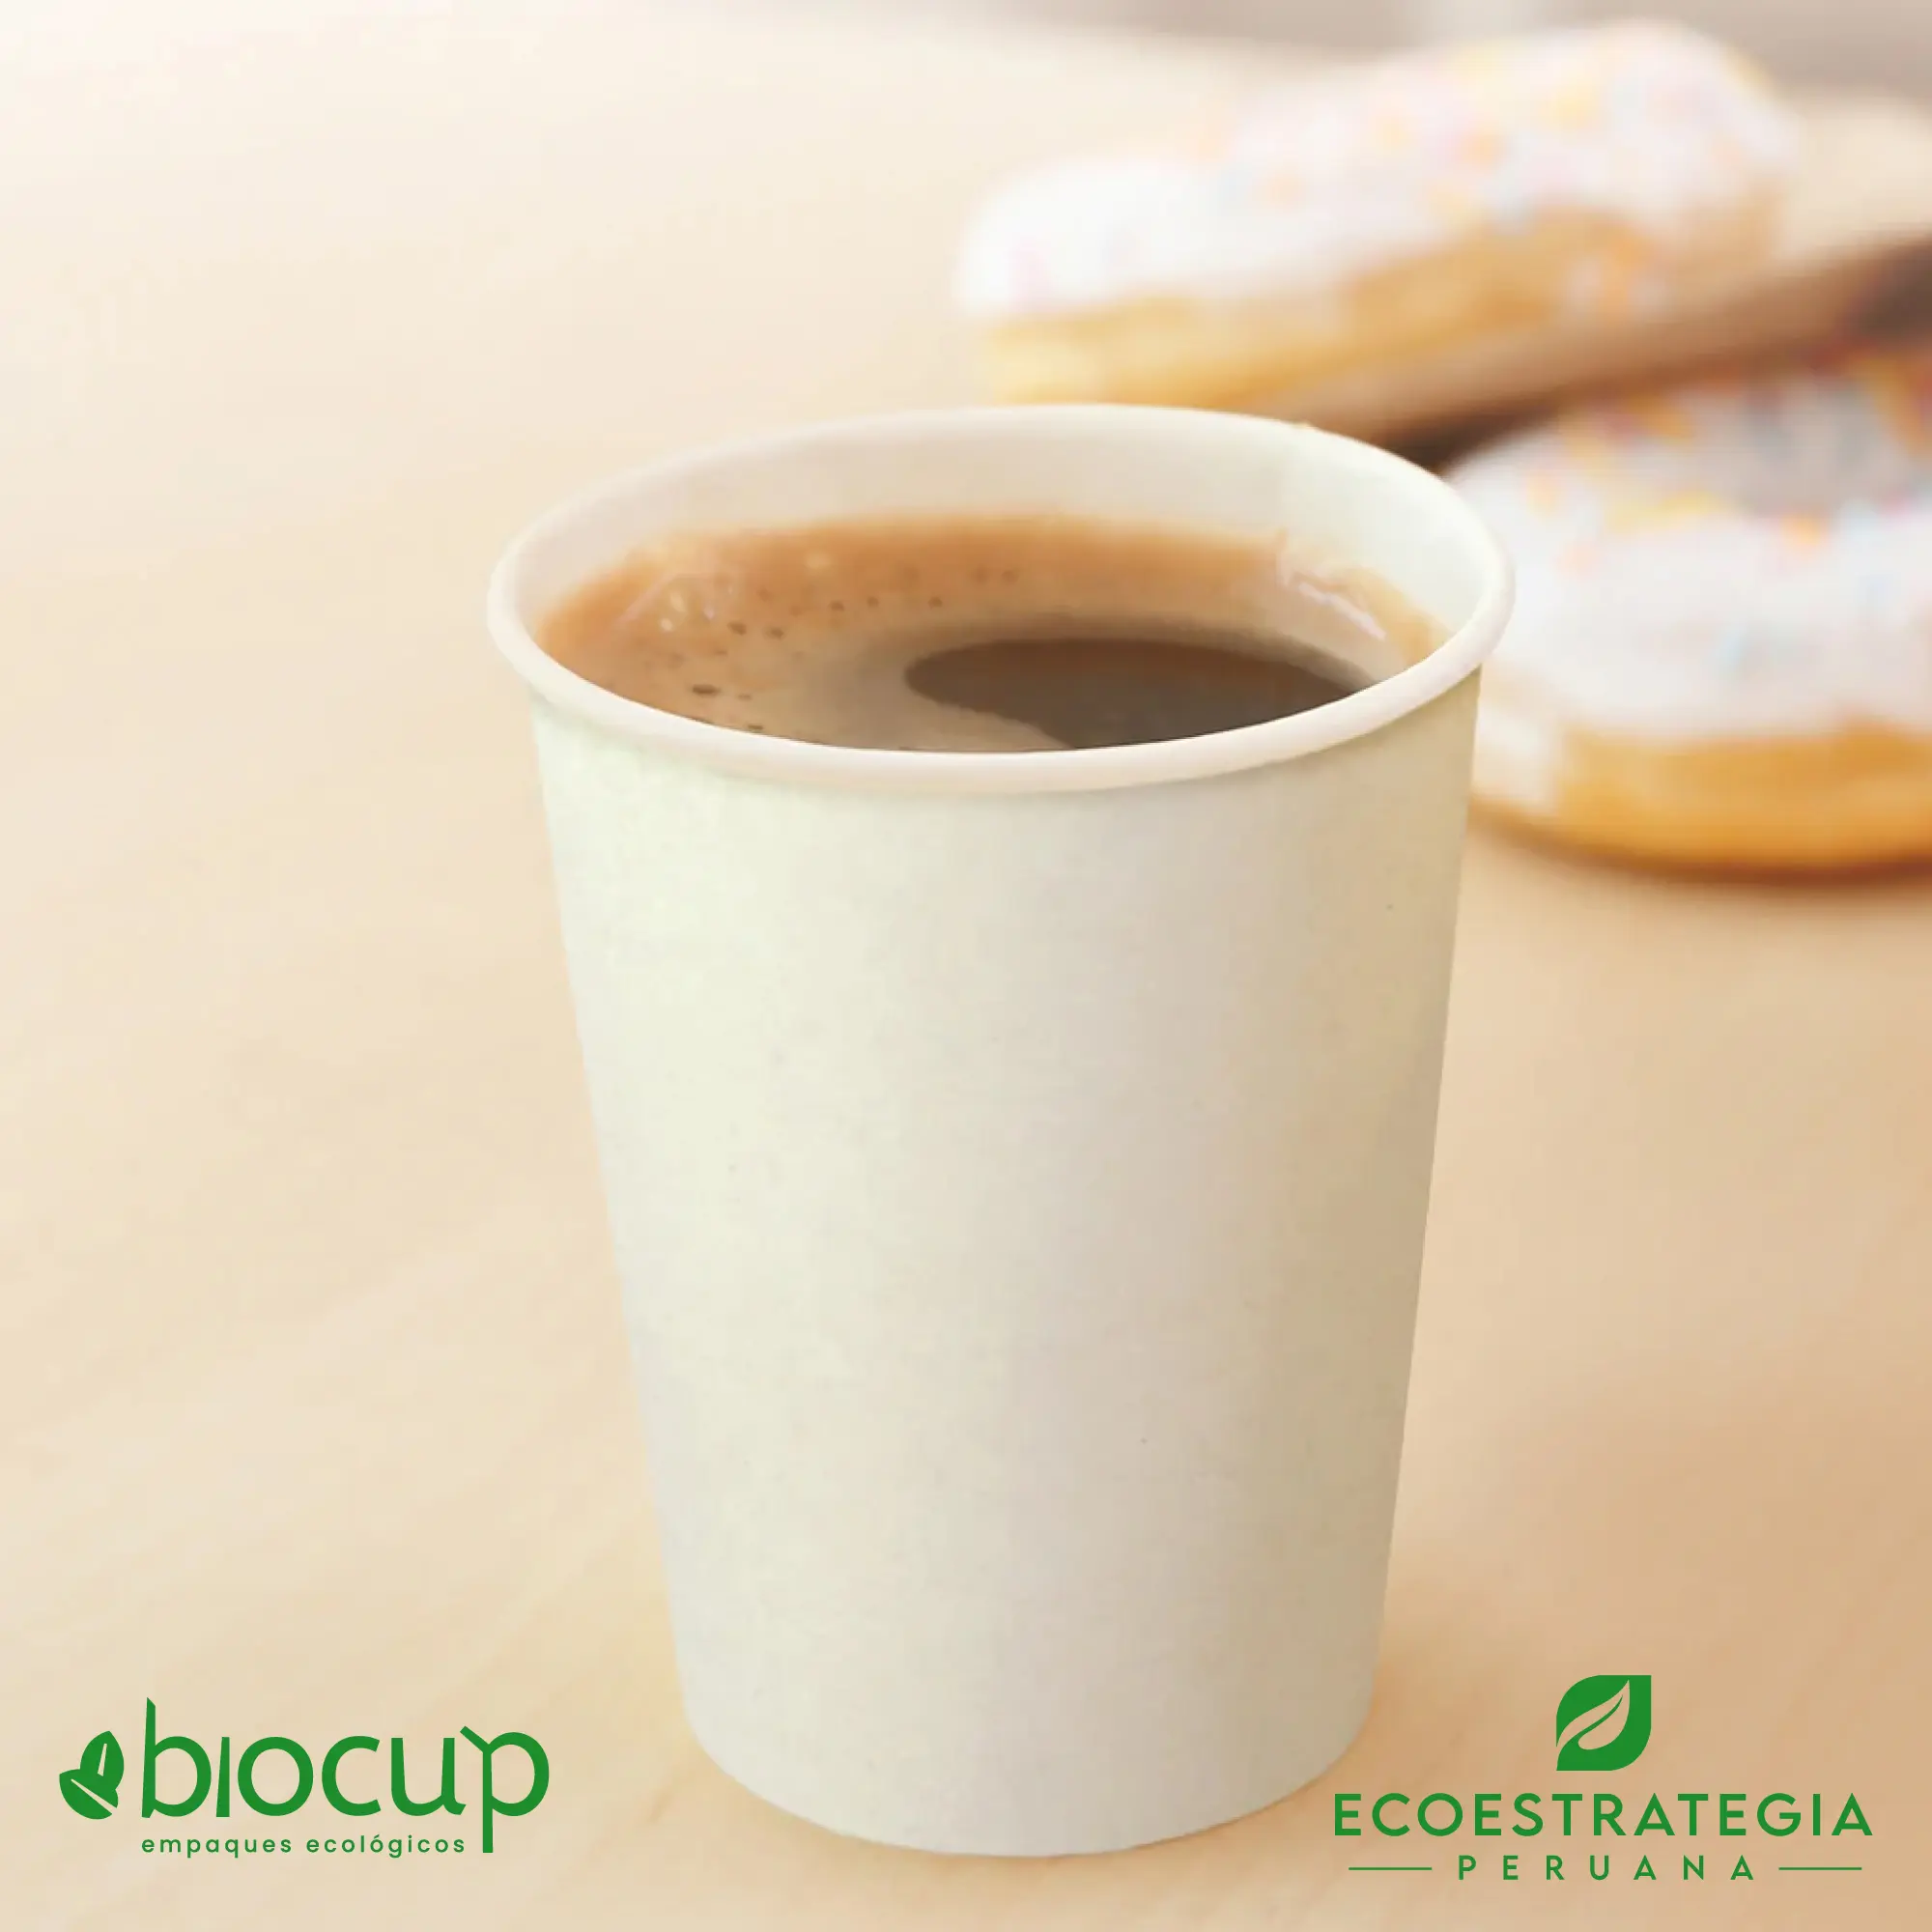 El vaso biodegradable de 10oz EP-B10, conocido como vasos de bambú biodegradables 10 oz, vasos compostable 10 oz, vaso desechable bambú, vasos biodegradable de bambú por mayor, vaso compostable 10 oz , vaso bambú, vaso bioform 10 oz, vaso bioform 12 oz, vaso pamolsa biodegradable, vaso por mayor, vaso compostable marrón, vasos para café Perú, vasos personalizable biodegradable, vaso hermético para delivery, vasos biodegradables para delivery, mayoristas de vasos biodegradables, distribuidores de vasos biodegradables, importadores de vasos biodegradables, vasos biodegradables eco estrategia peruana